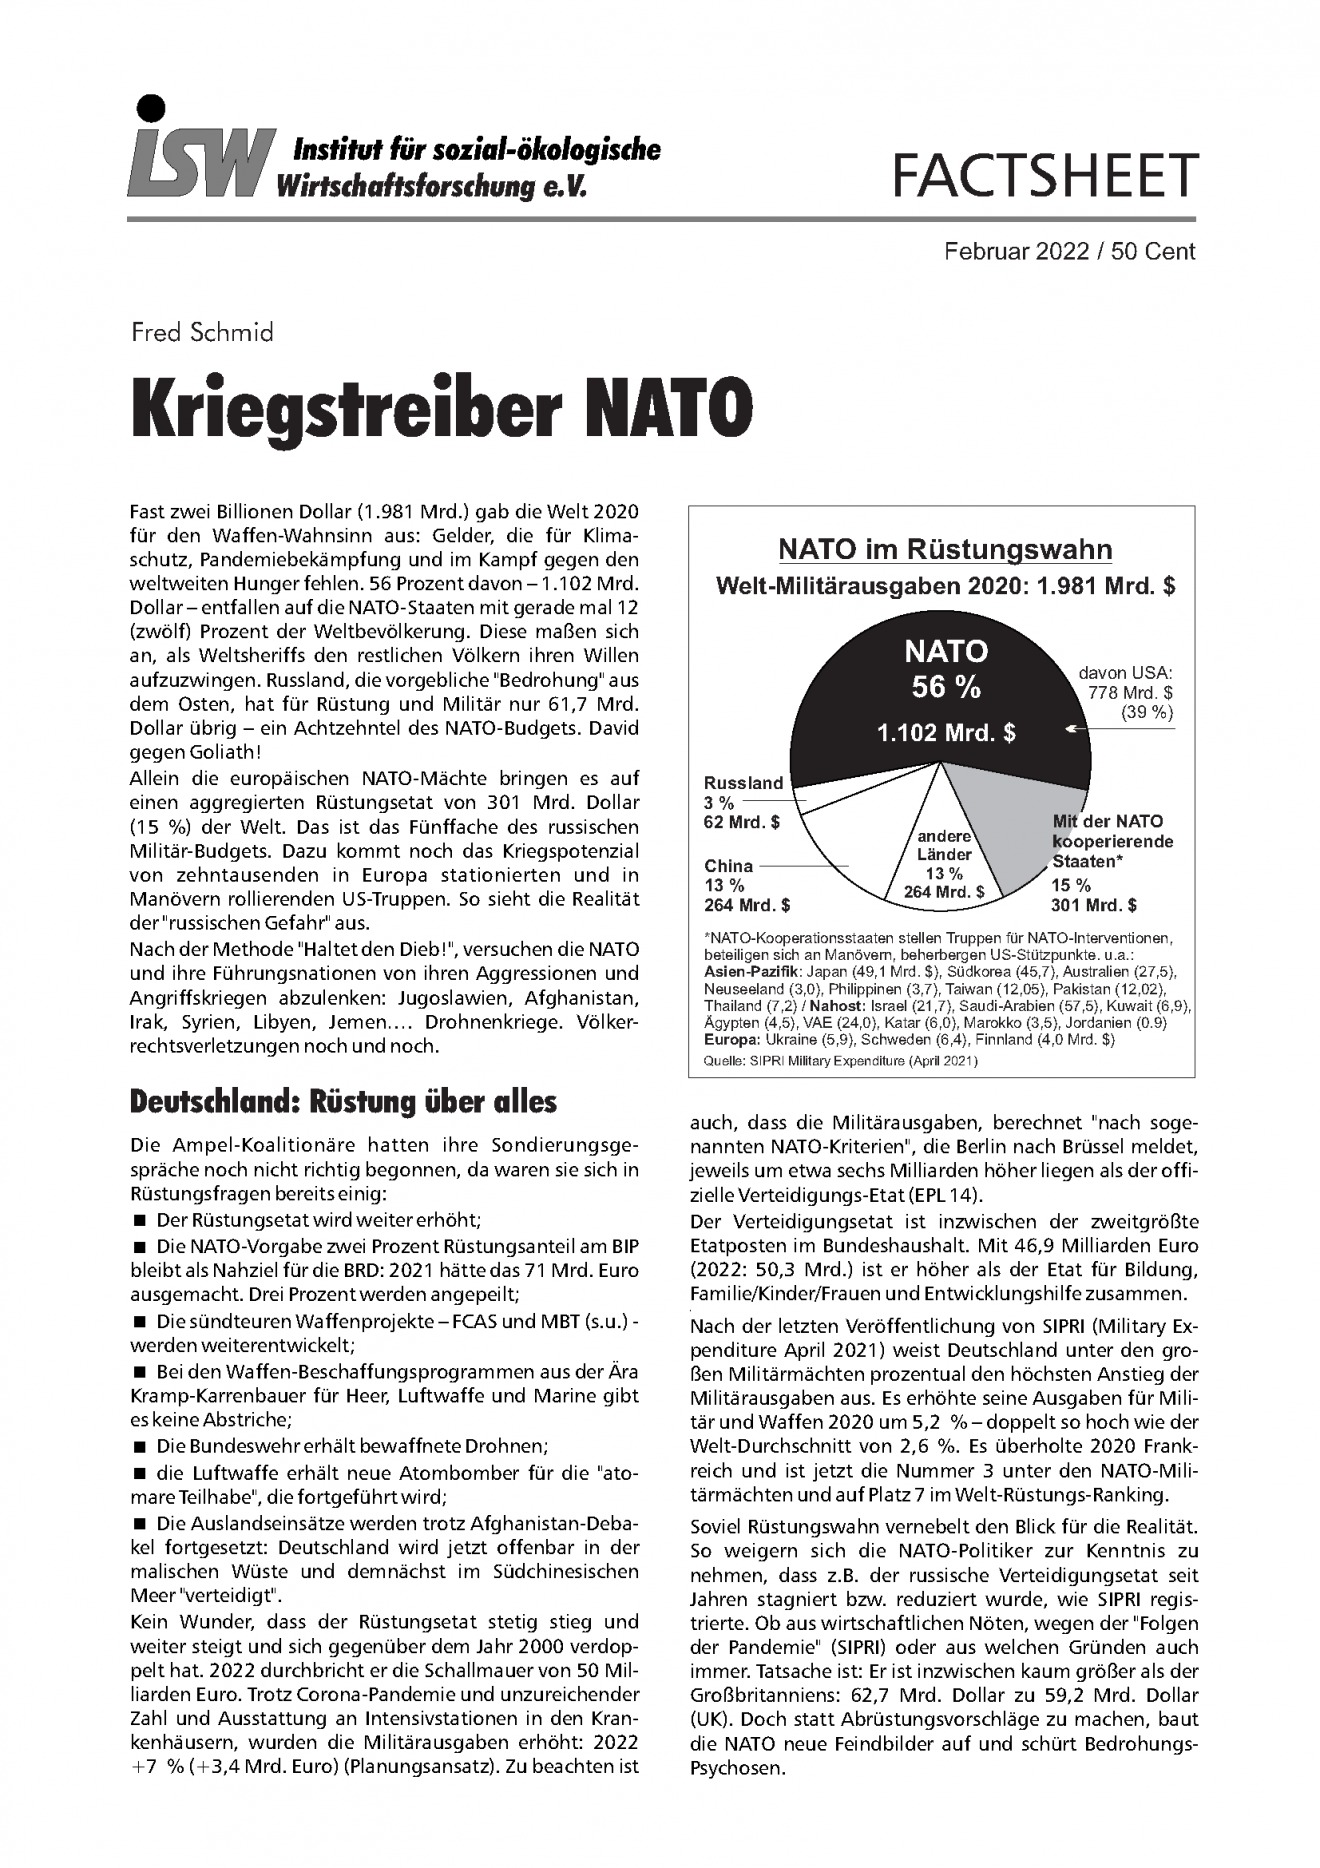 Erklärung zum isw-Factsheet „Kriegstreiber NATO“